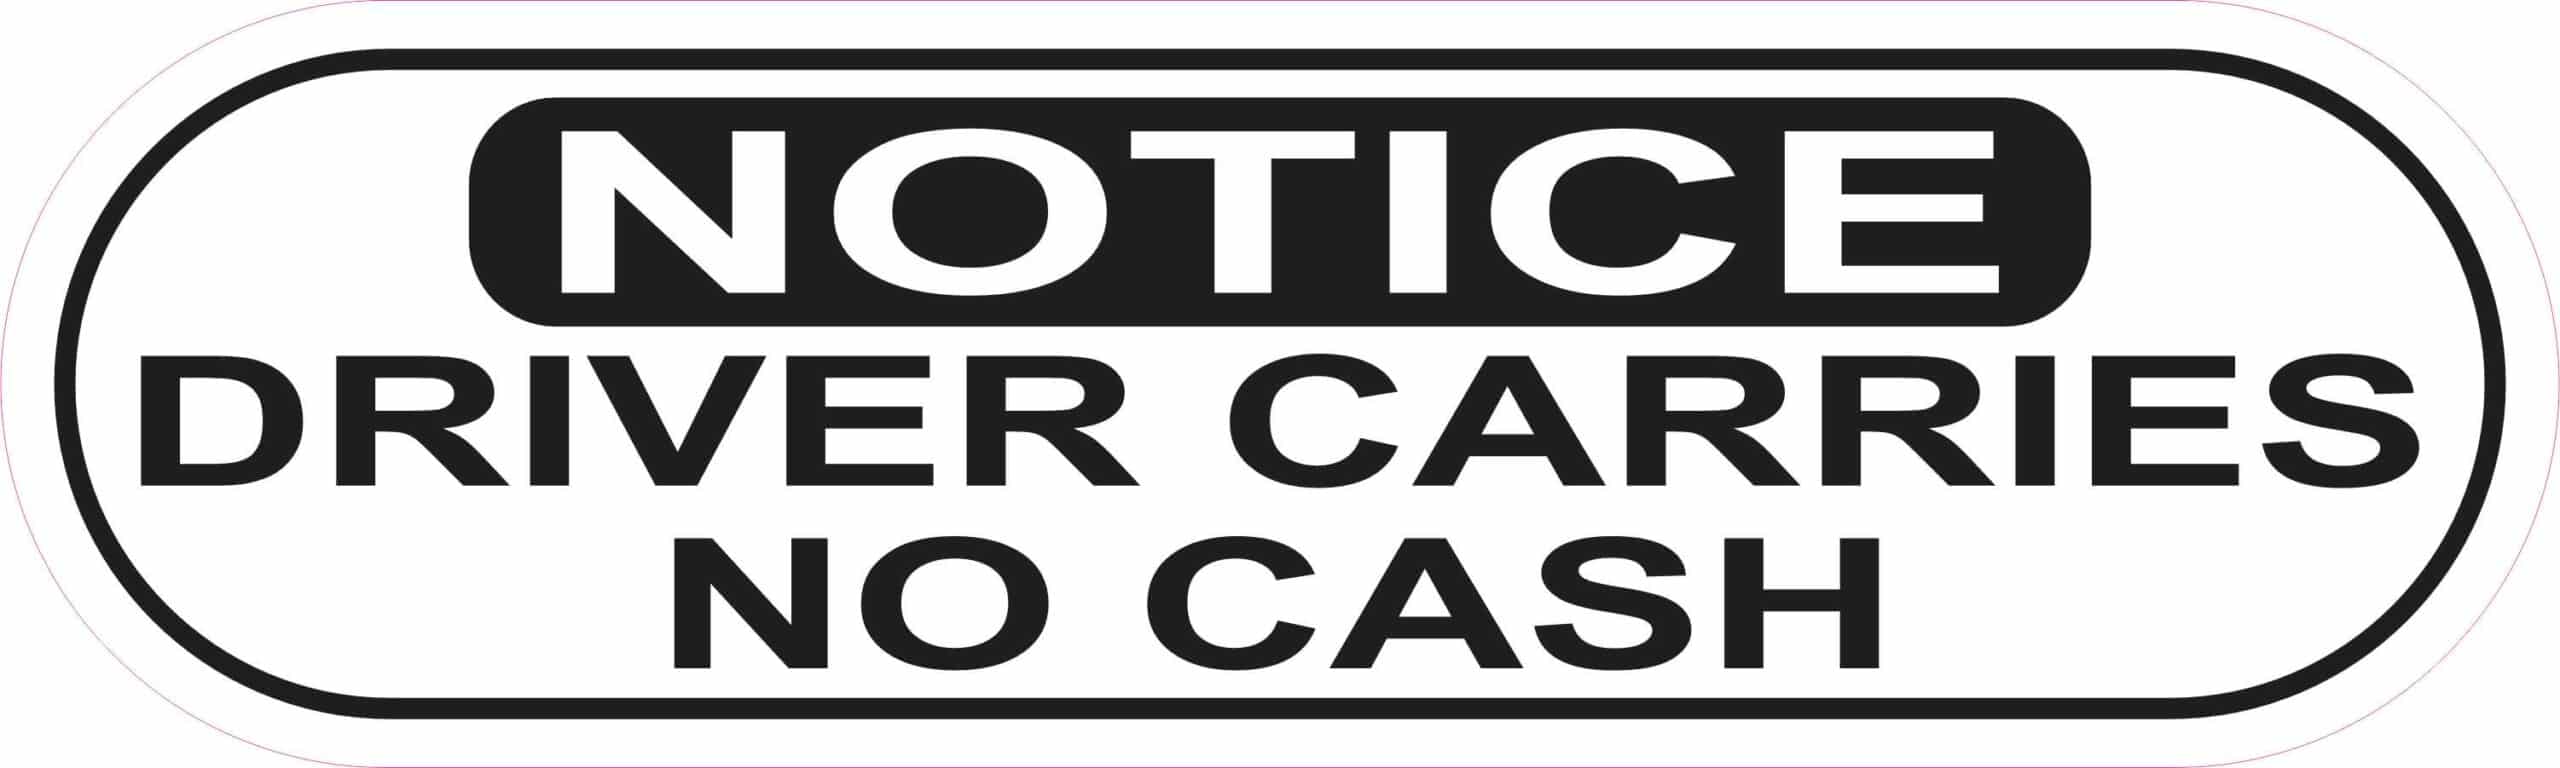 Stickertalk Notice Driver Carries No Cash Vinyl Sticker 10 Inches X 3 Inches 